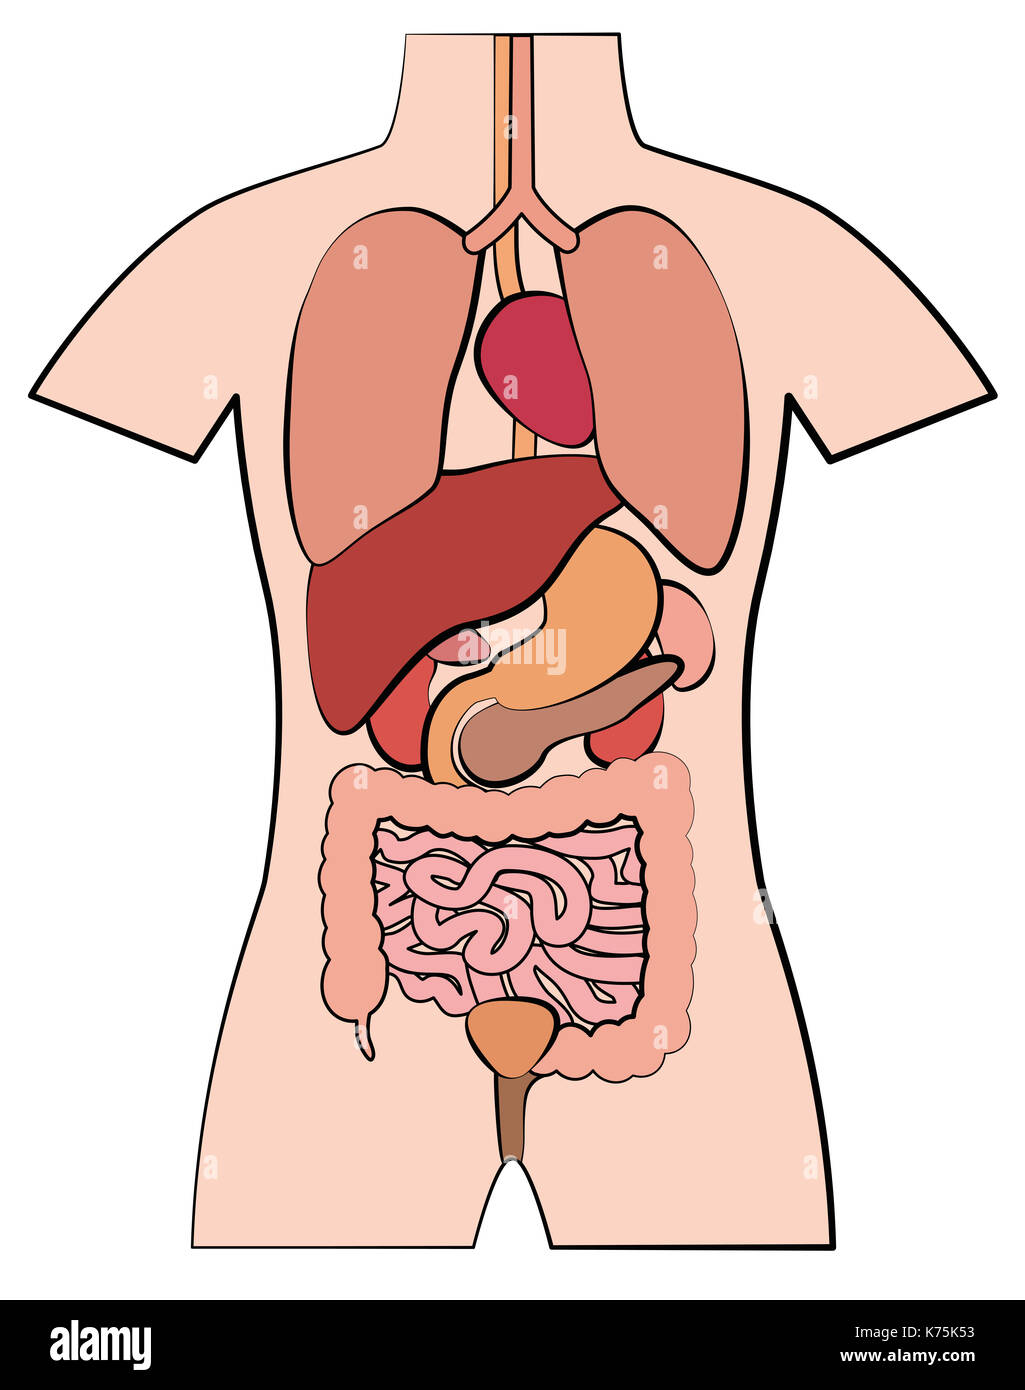 Der menschlichen Anatomie, innere Organe - schematische Übersicht Comic Stil Abbildung auf weißen Hintergrund. Stockfoto